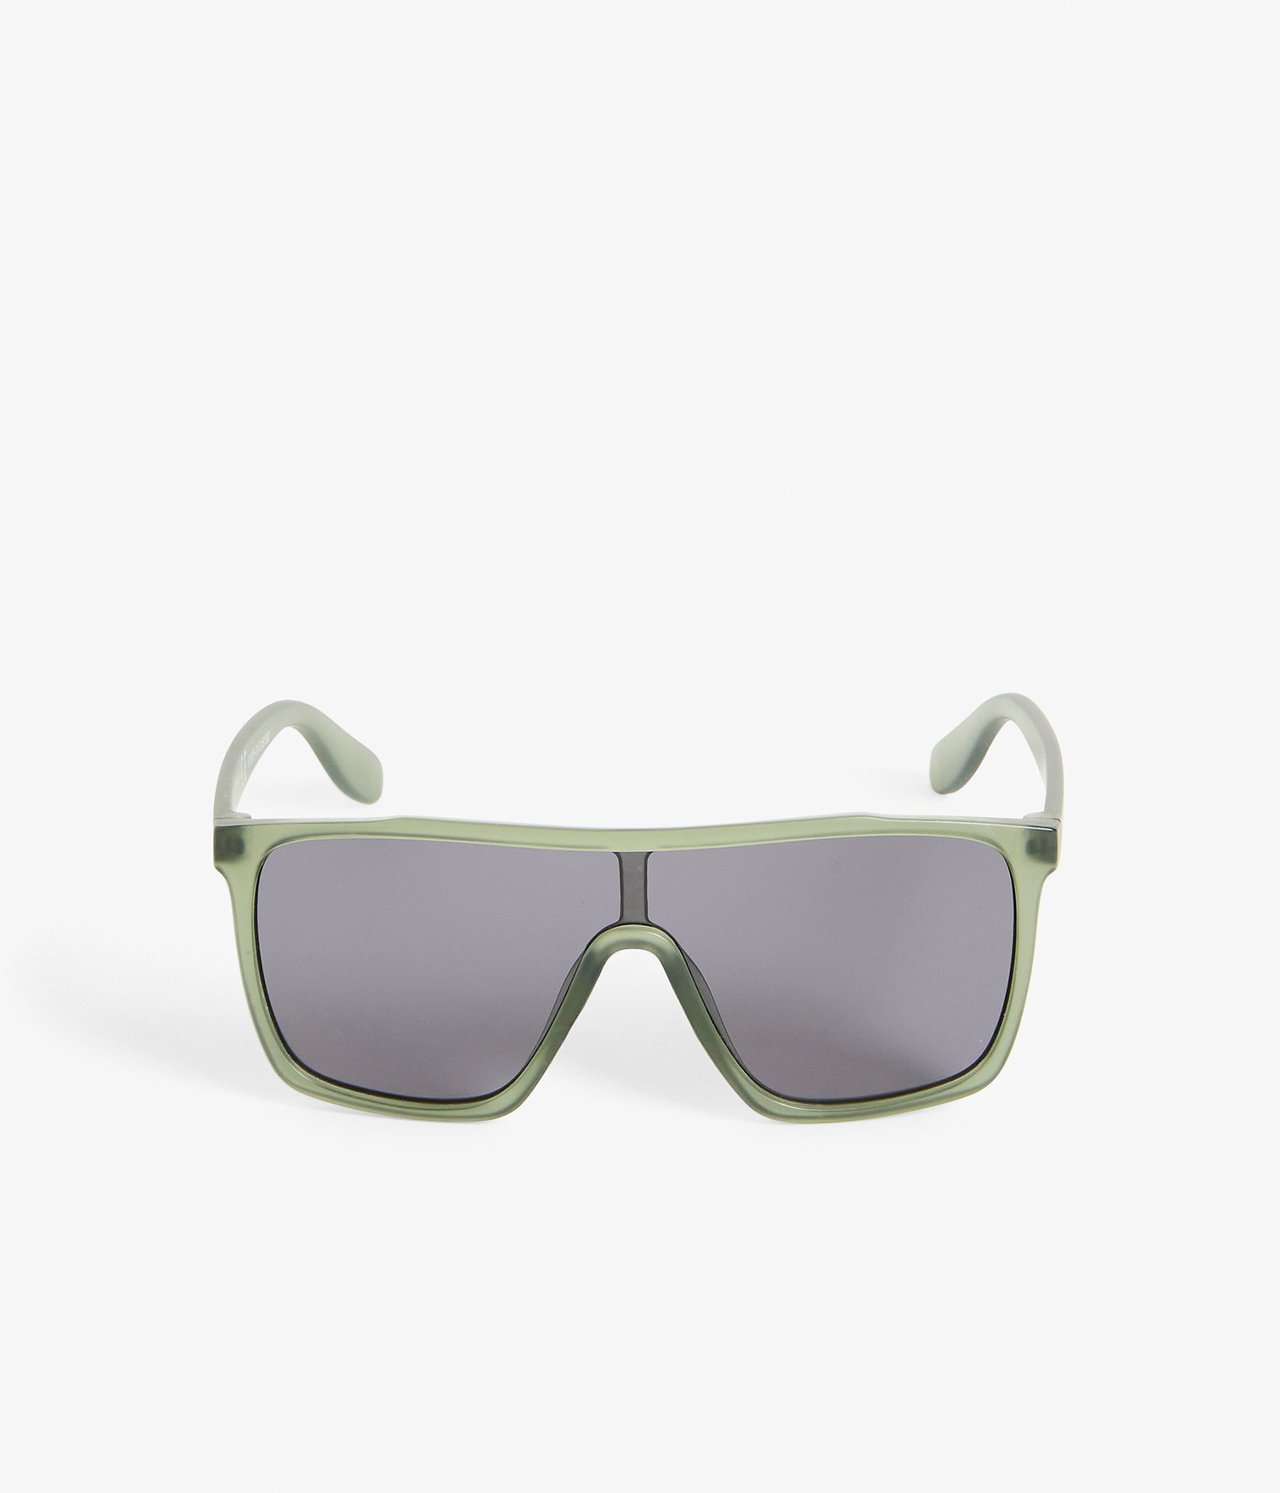 Solglasögon barn Grön - ONE SIZE - 0